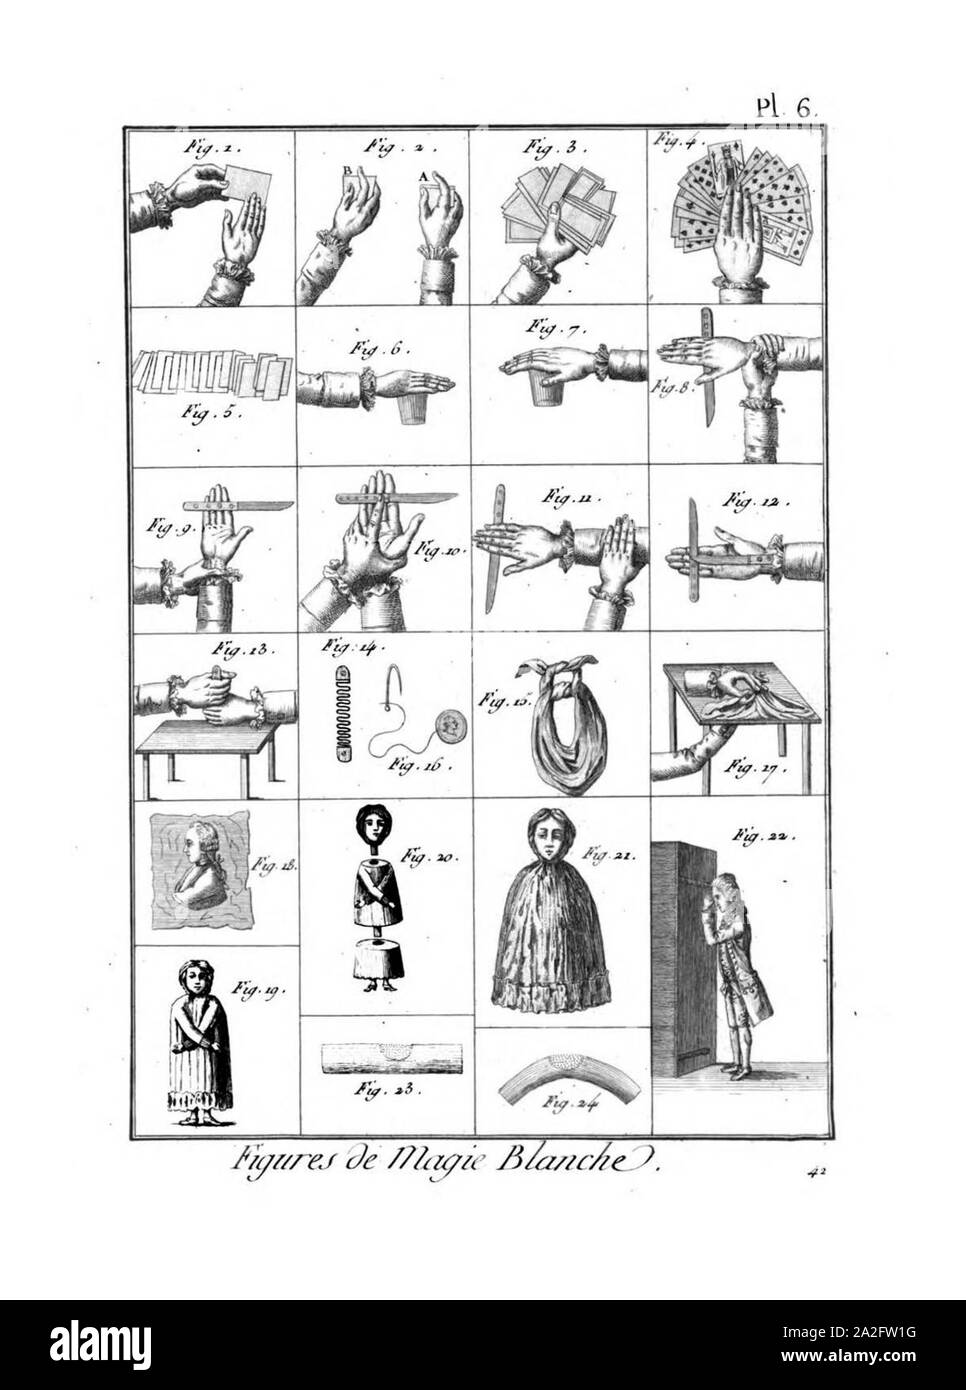 Encyclopédie méthodique-Planches, T8, PL483-Amusemens -18-6. Stockfoto